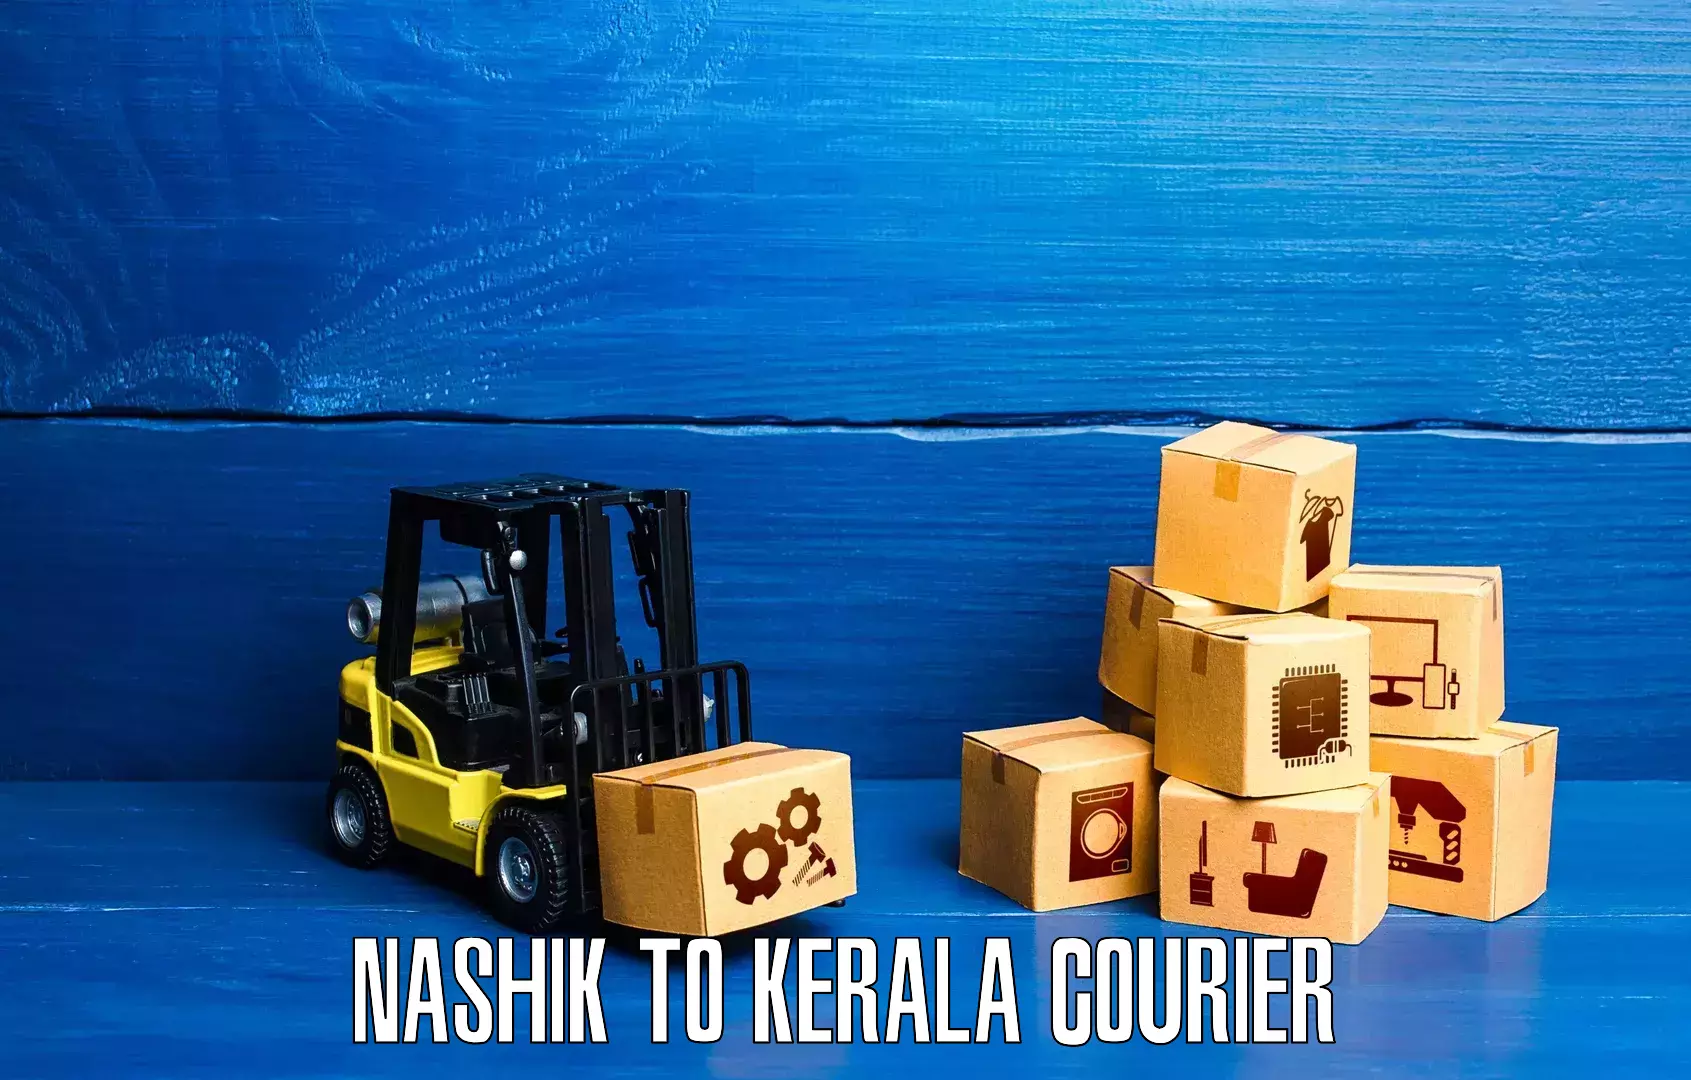 Long distance courier Nashik to Cochin Port Kochi